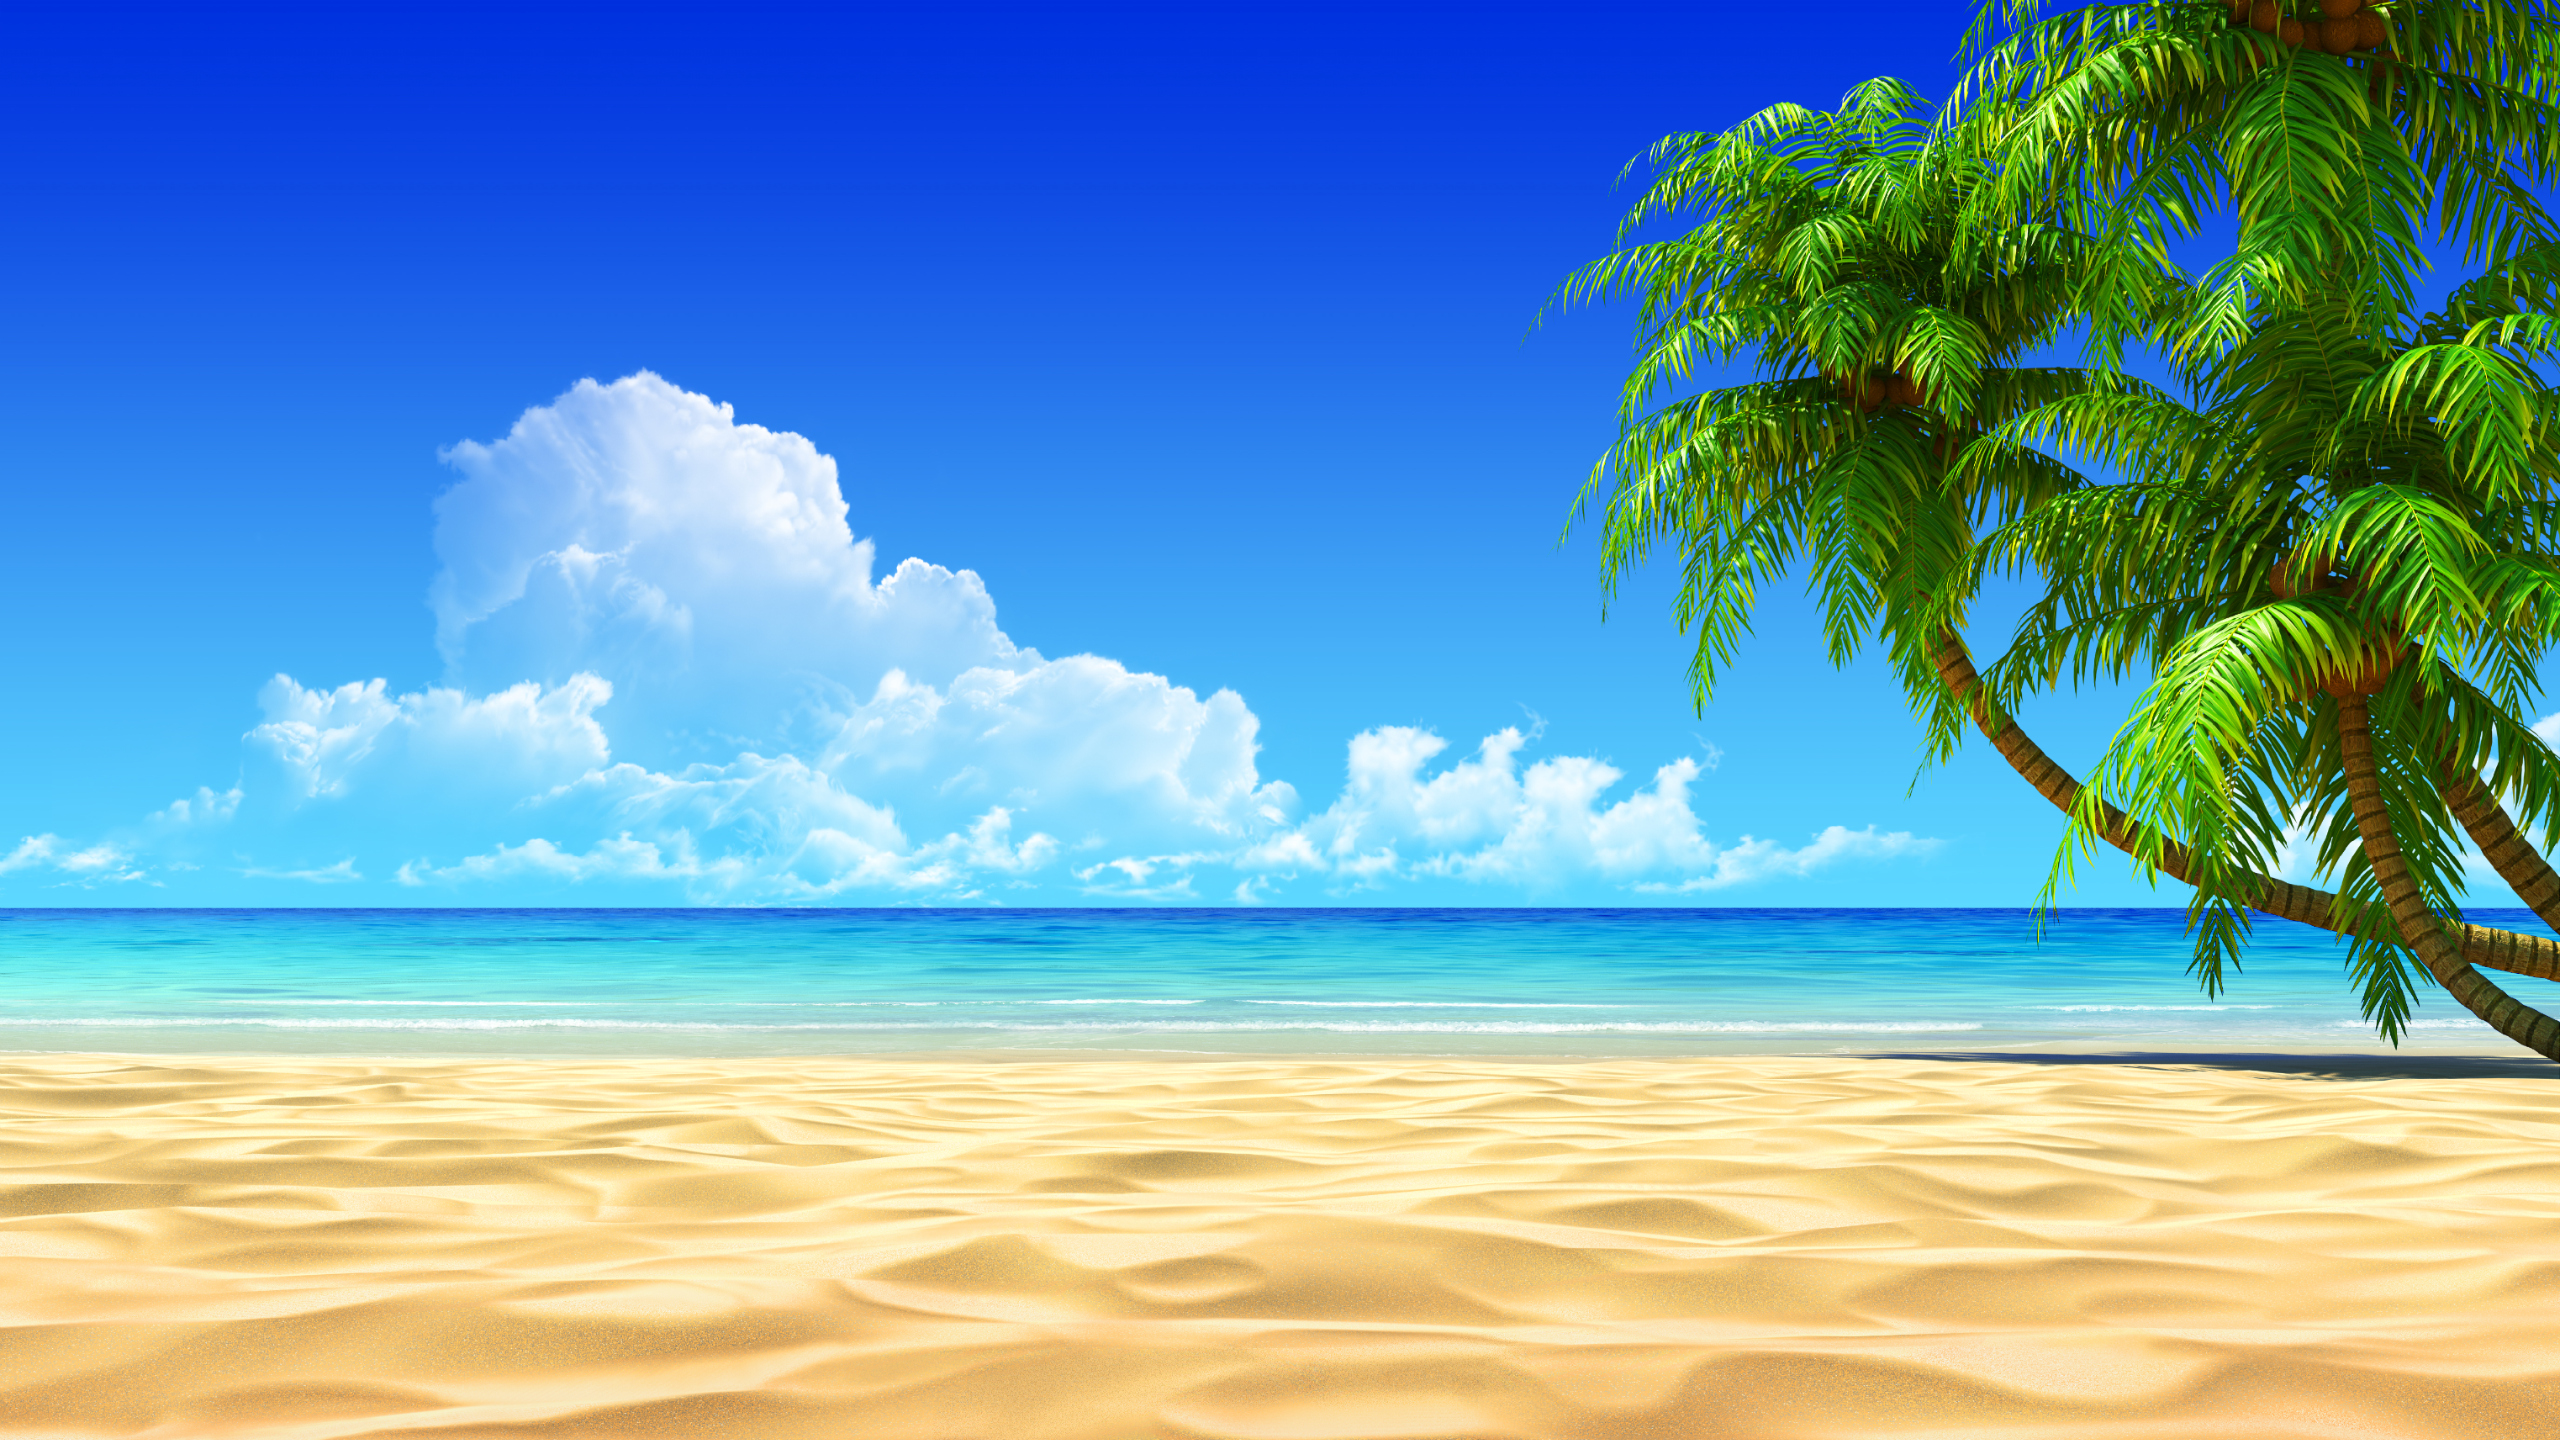 Tropical Beach HD Desktop Wallpaper For Background